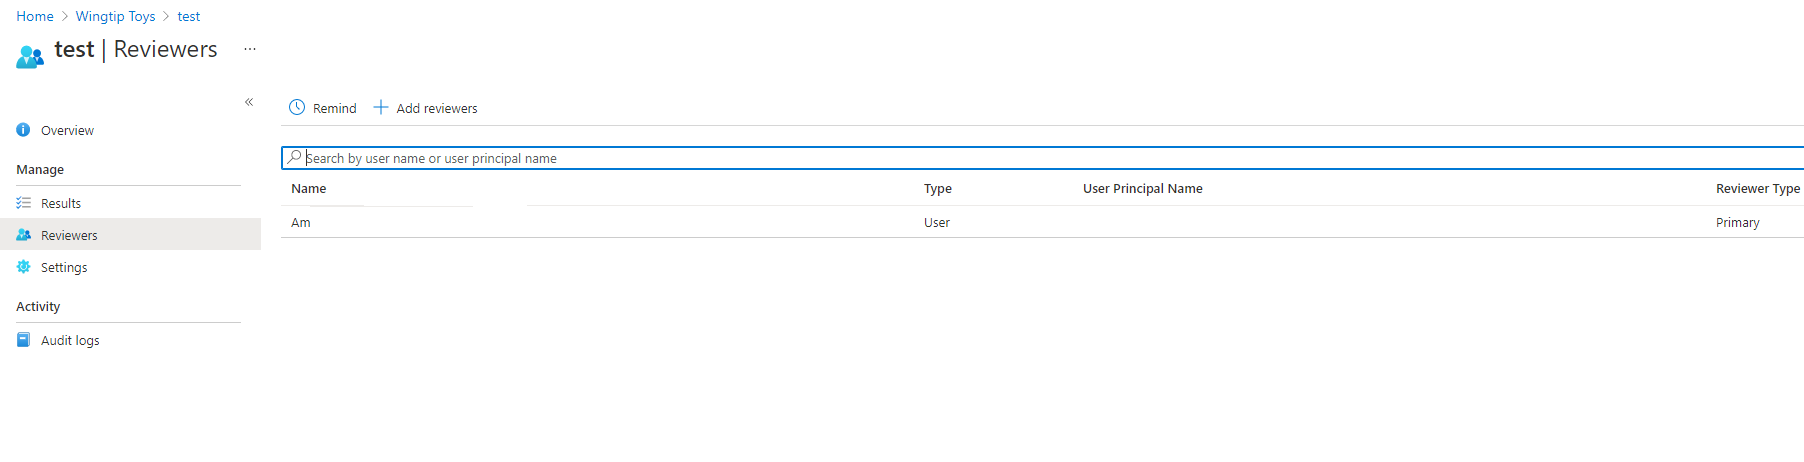 “审阅者”页的屏幕截图，其中列出了 Azure 资源角色的名称和用户主体名称。